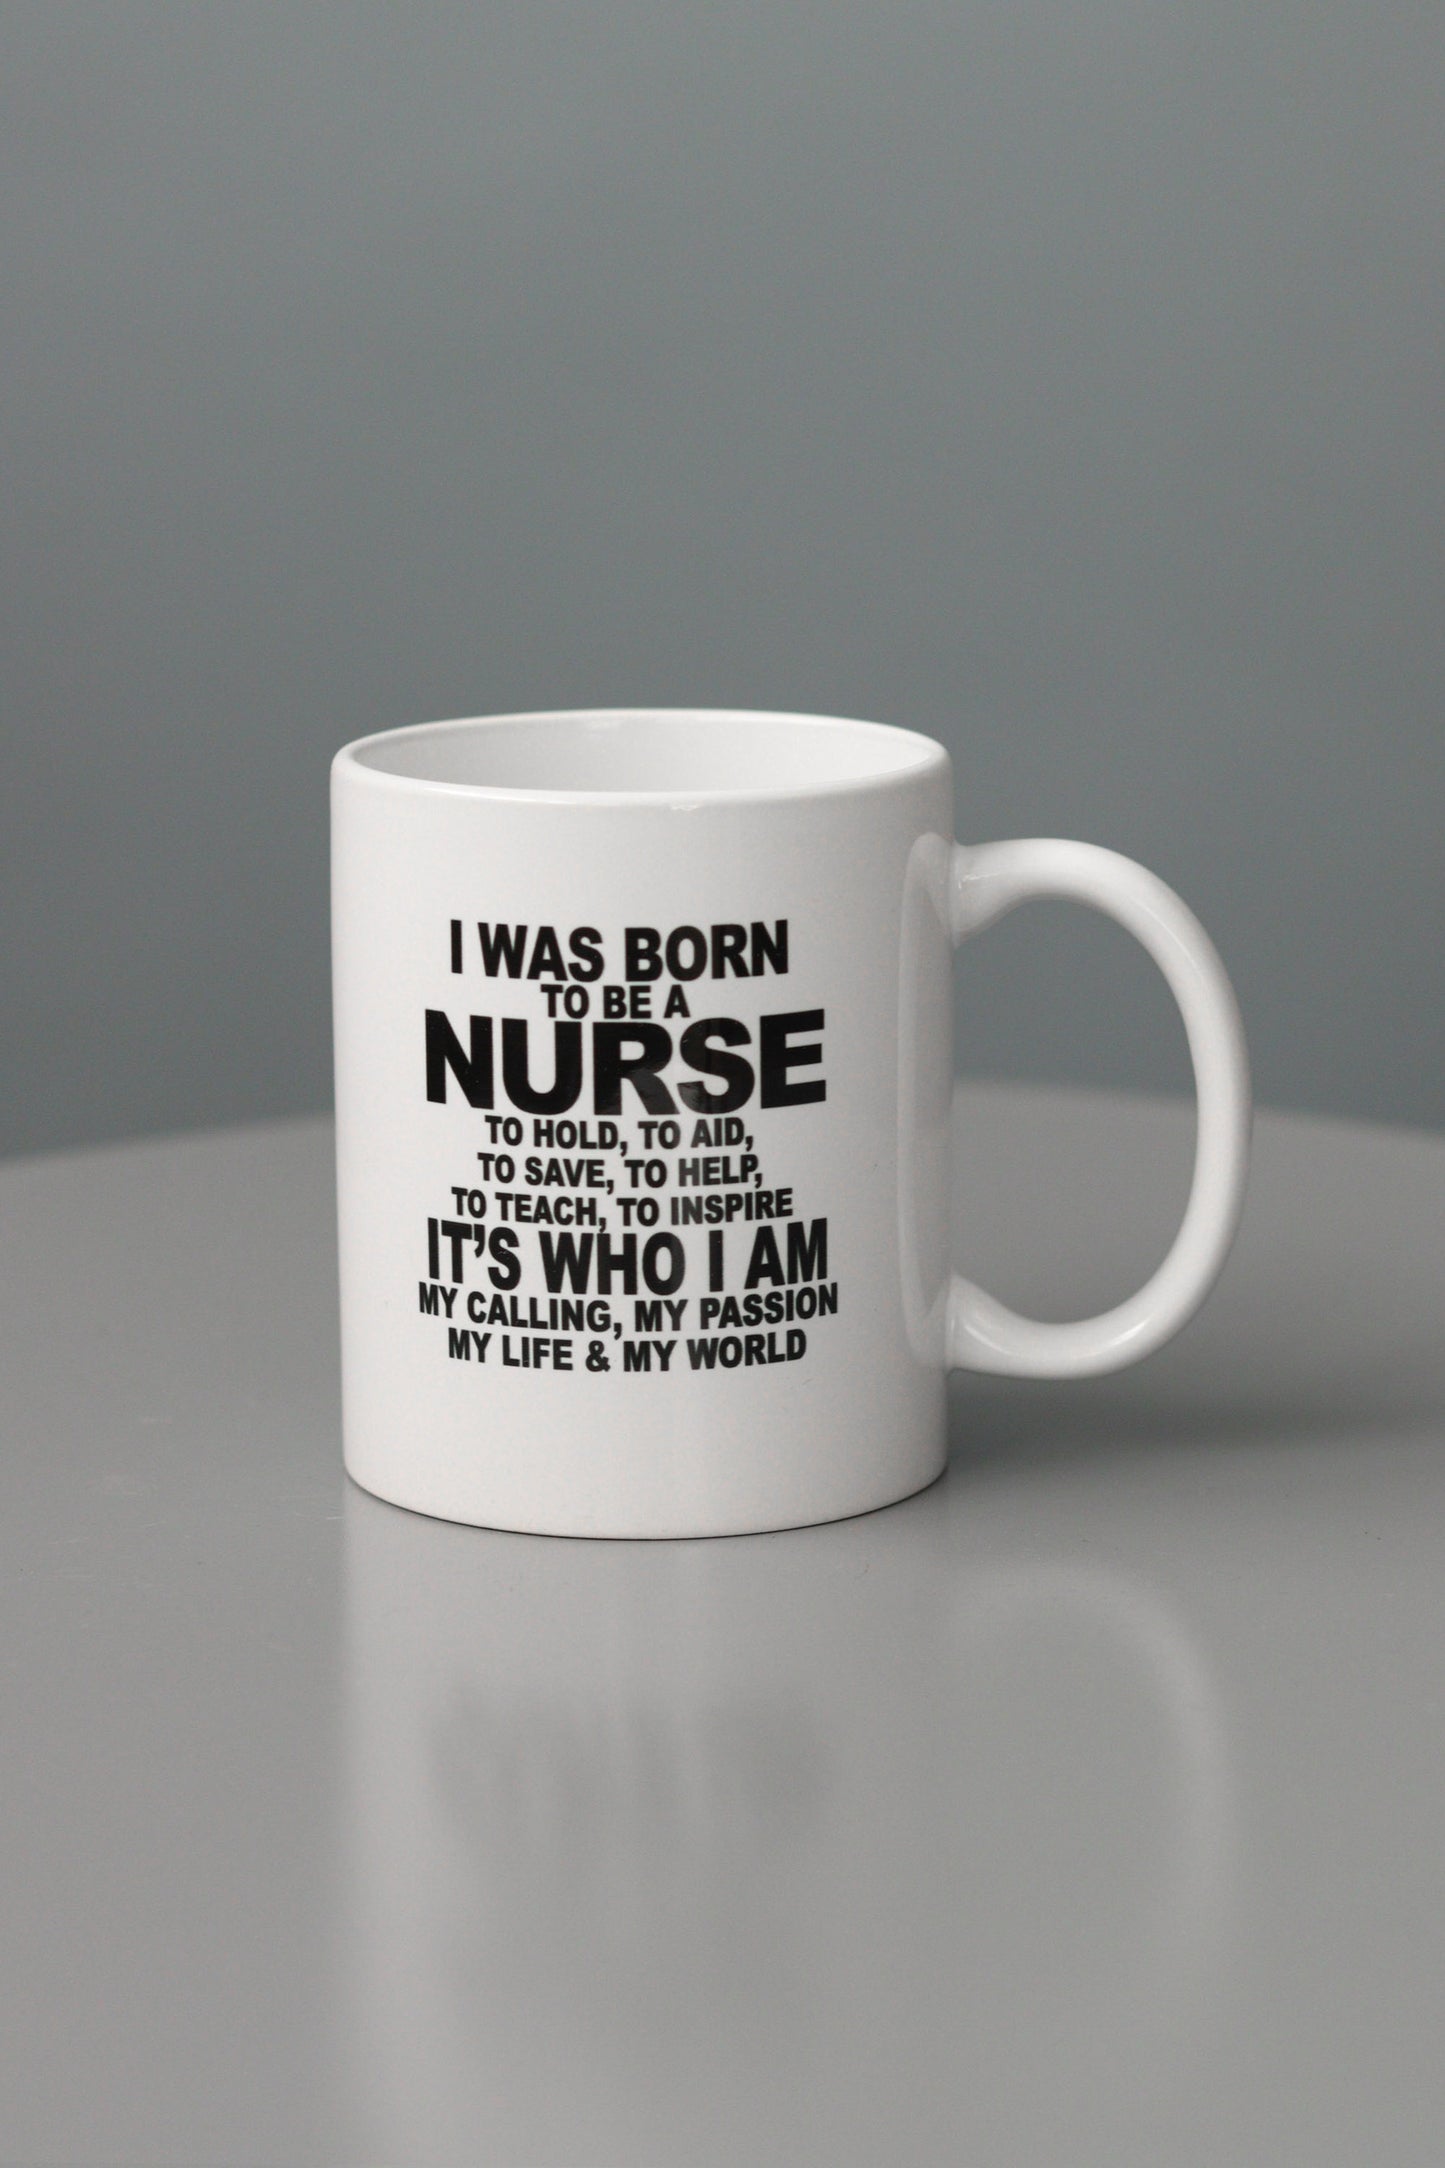 I was born to be a Nurse Ceramic Coffee Mug